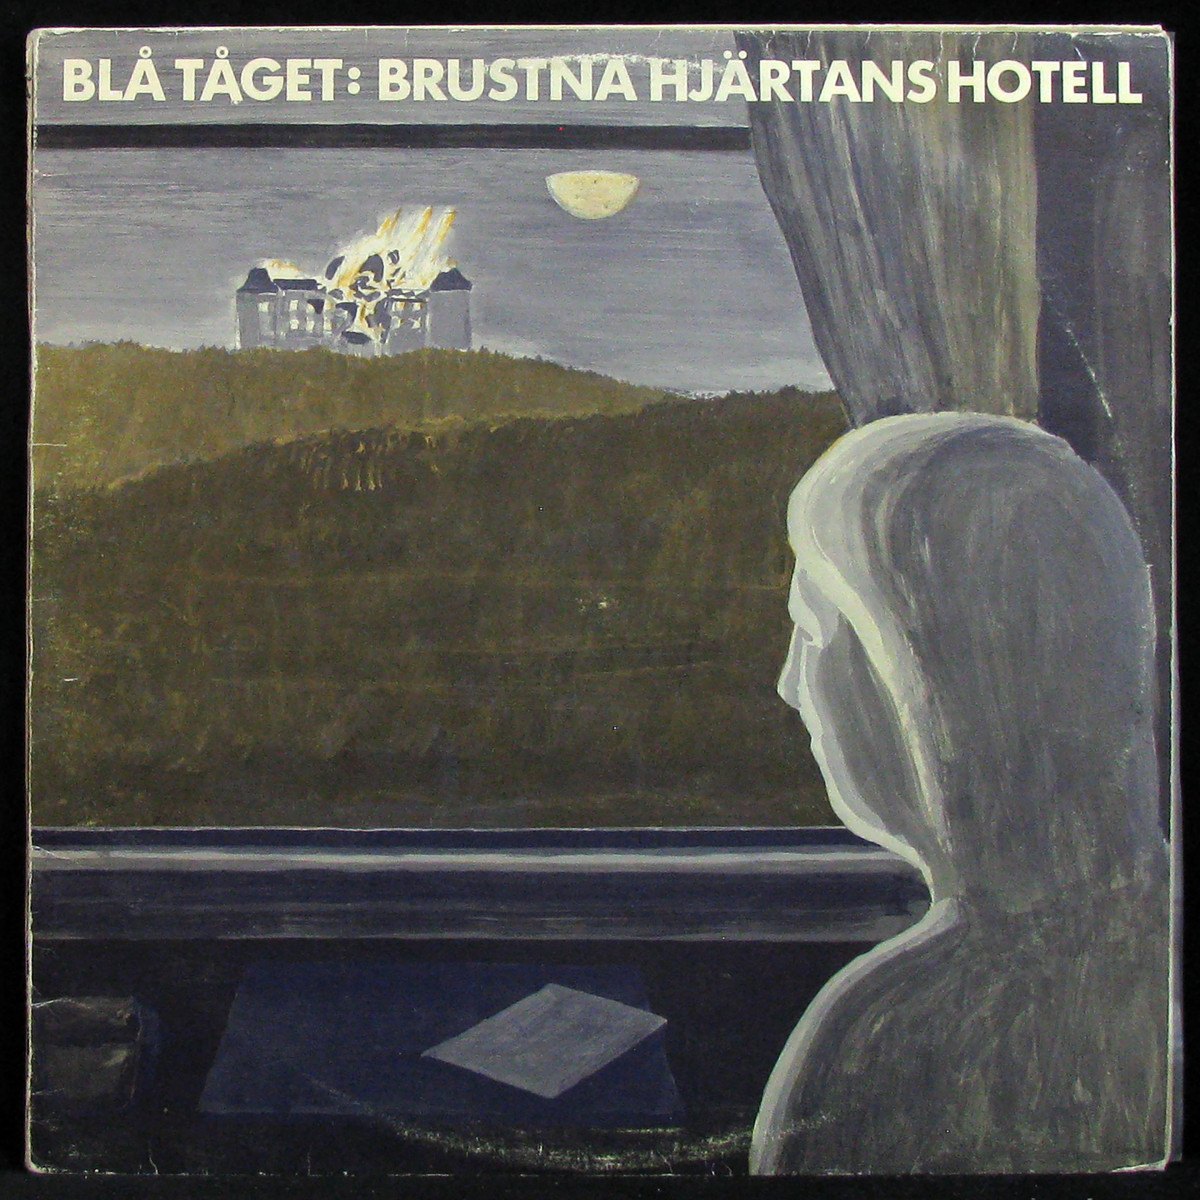 Brustna Hjartans Hotell